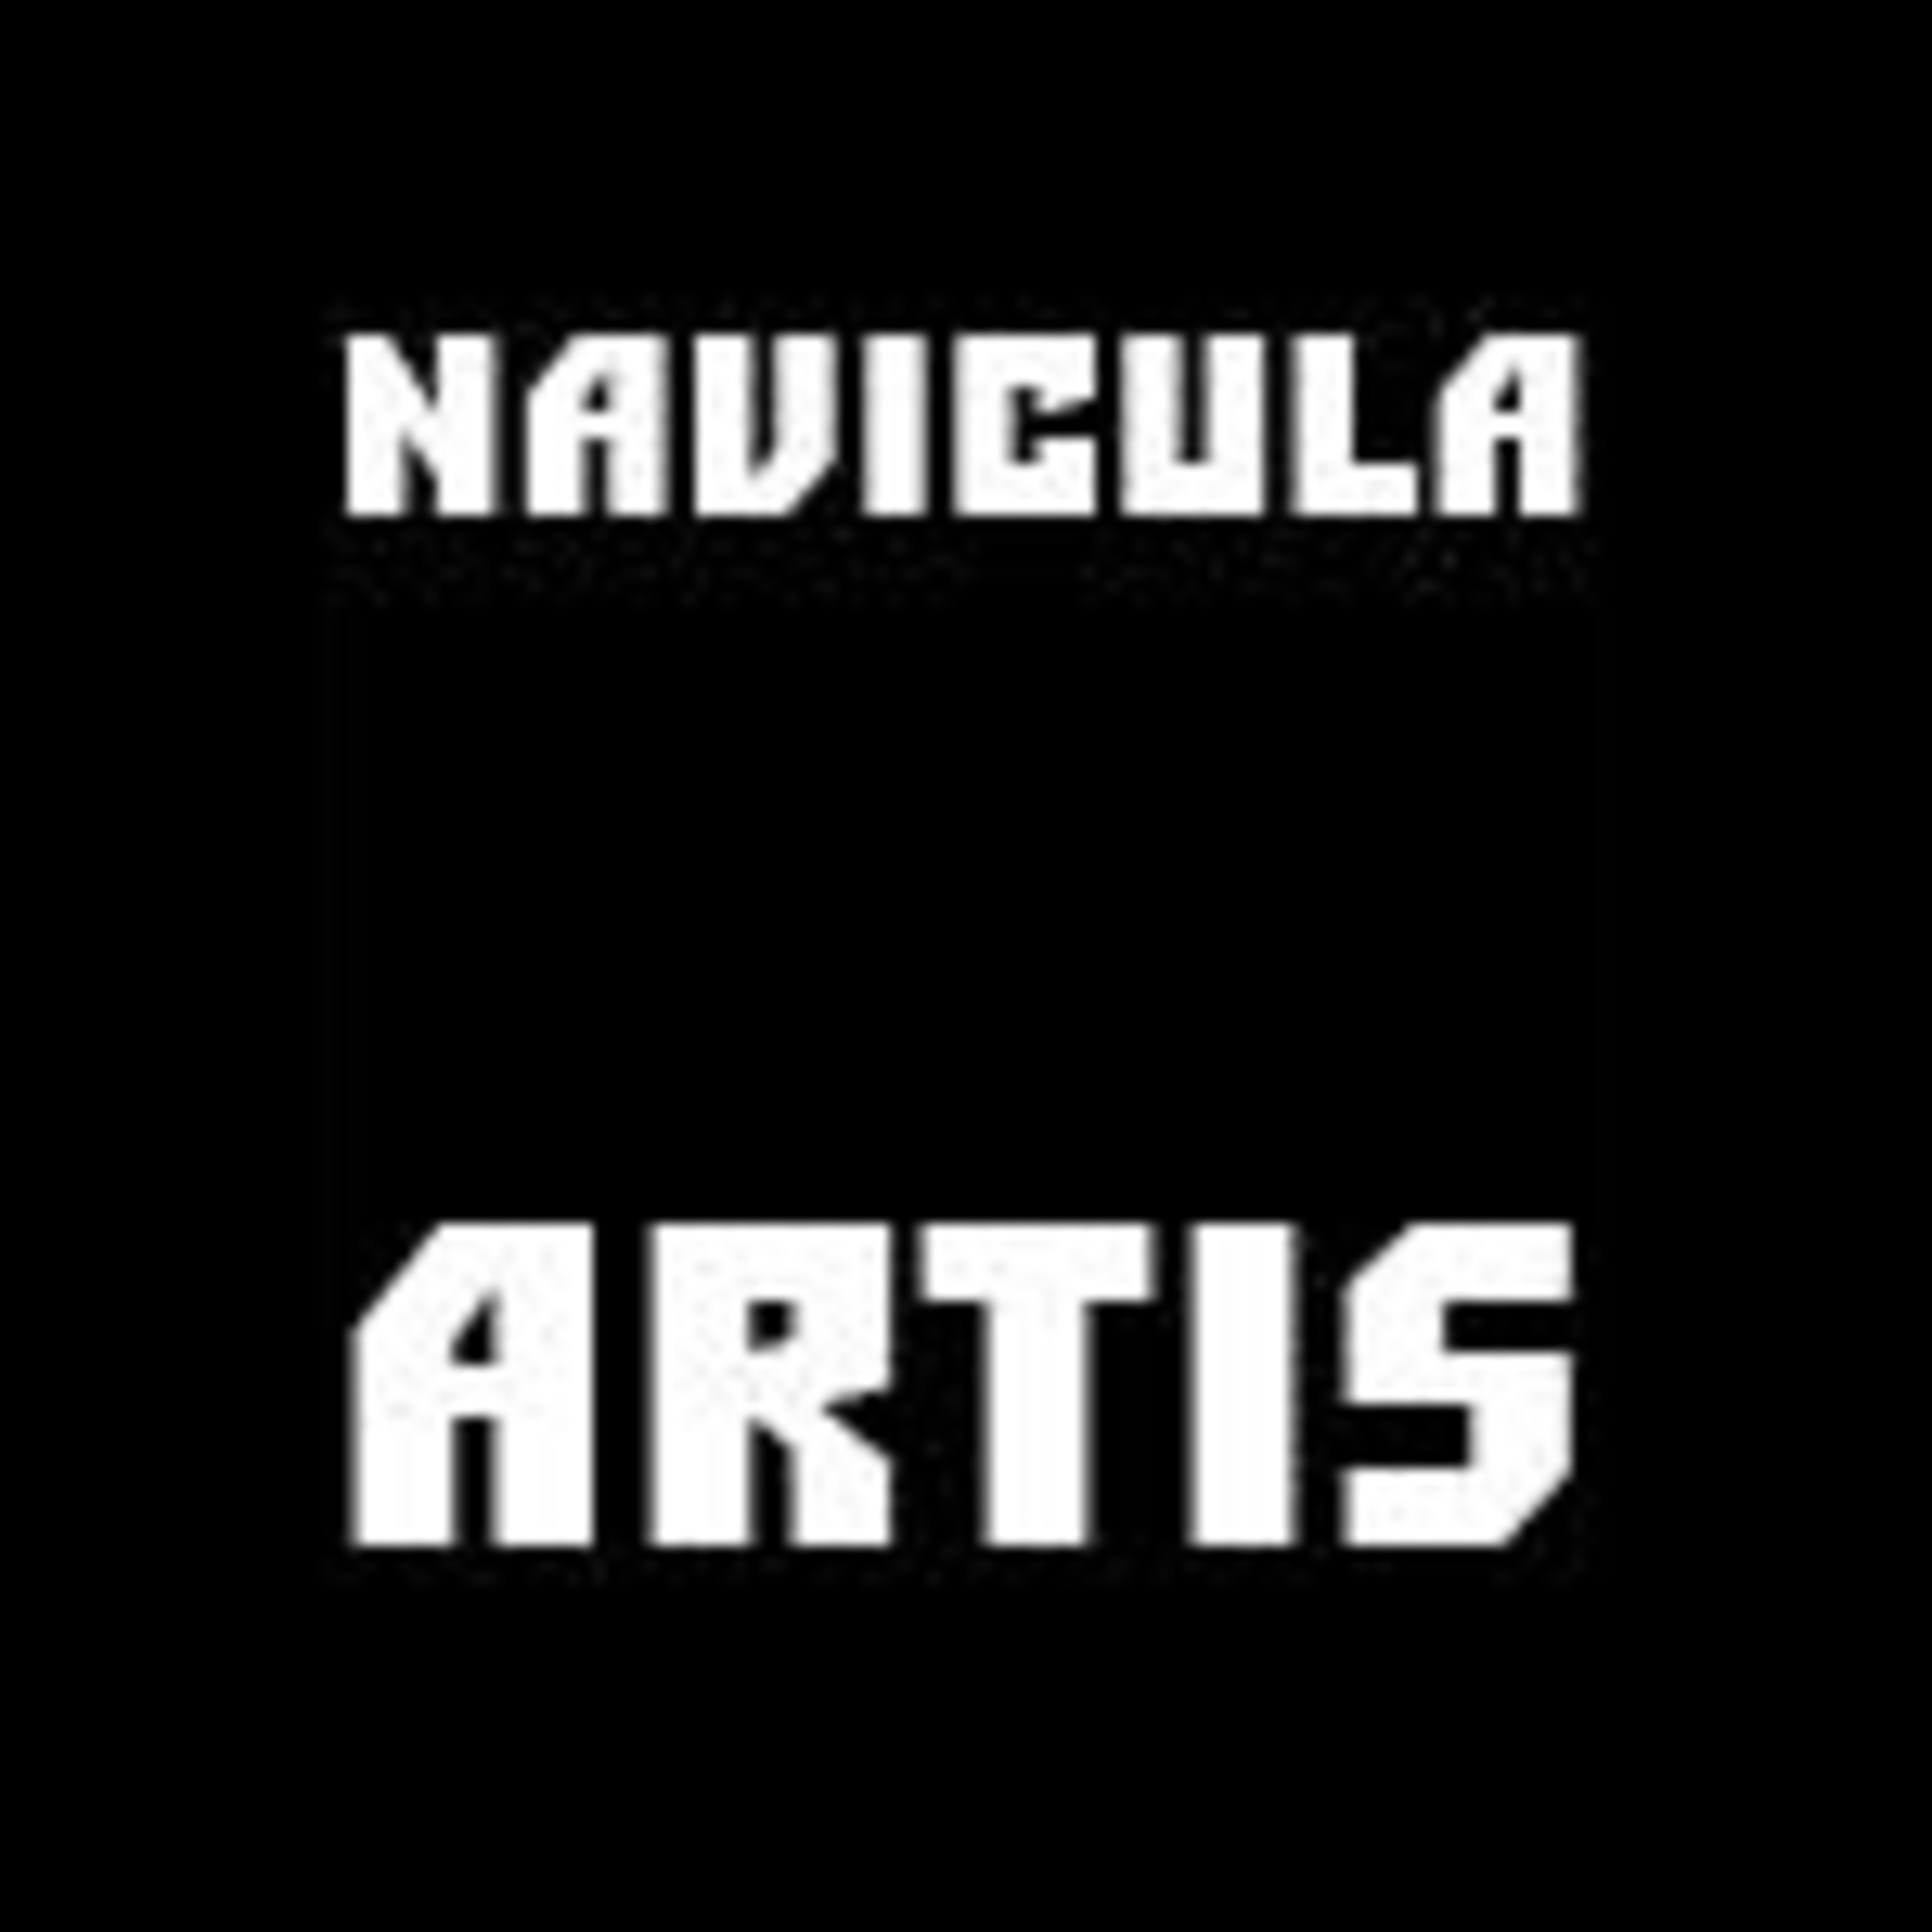 Gallery Navicula Artis